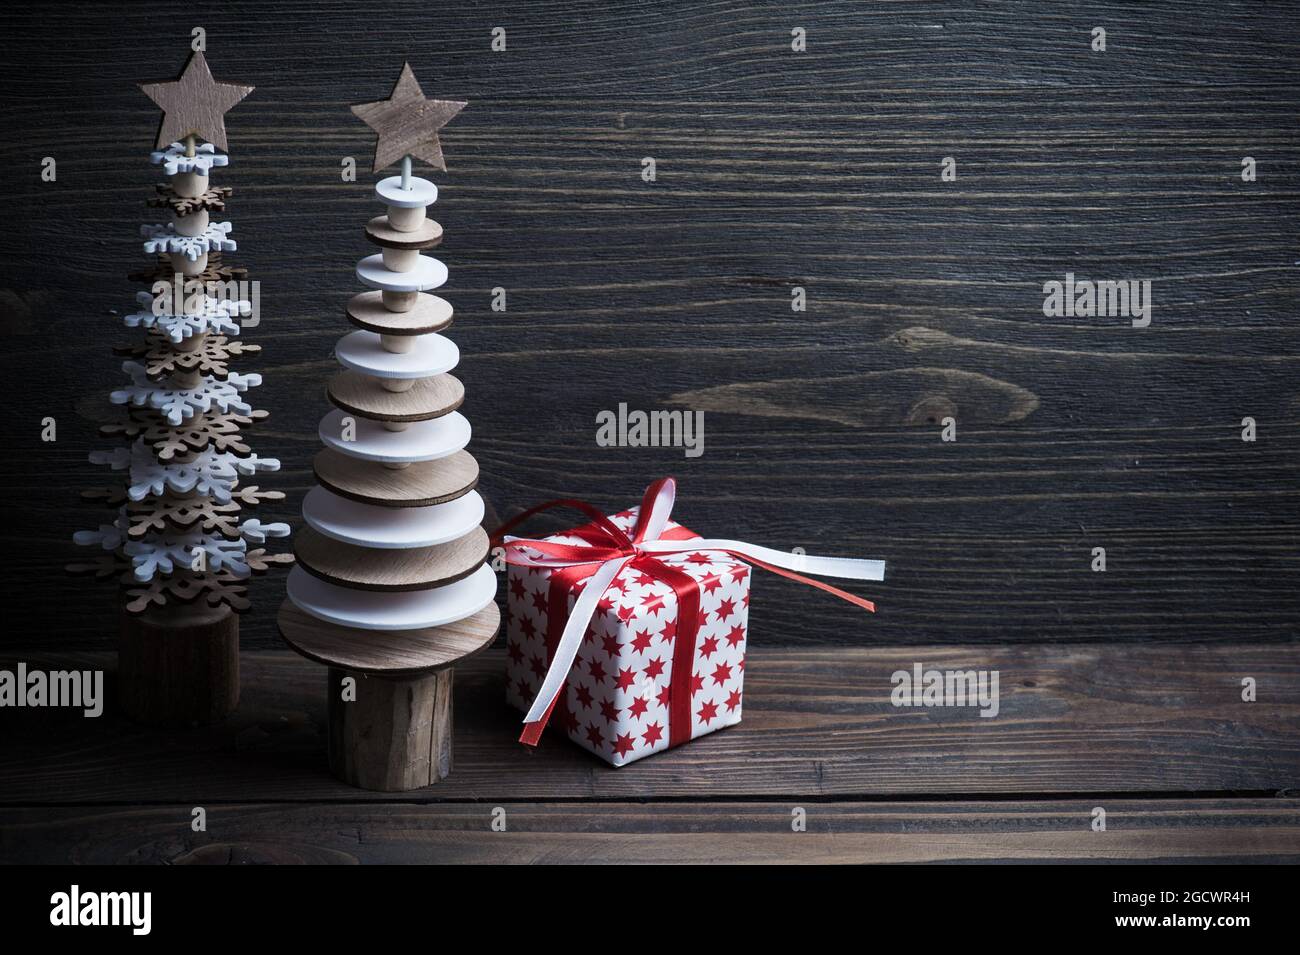 Weihnachten Holzbäume und weiße rote Geschenkbox vover dunklen rustikalen Holzhintergrund. Öko-Stil, Naturholz, Platz für Text. Getöntes Bild Stockfoto